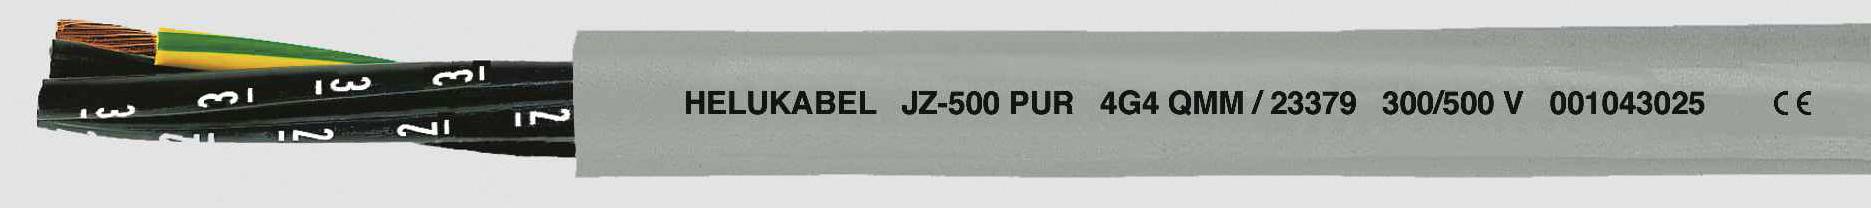 HELUKABEL JZ-500 PUR Steuerleitung 7 G 1.50 mm² Grau 23367 100 m